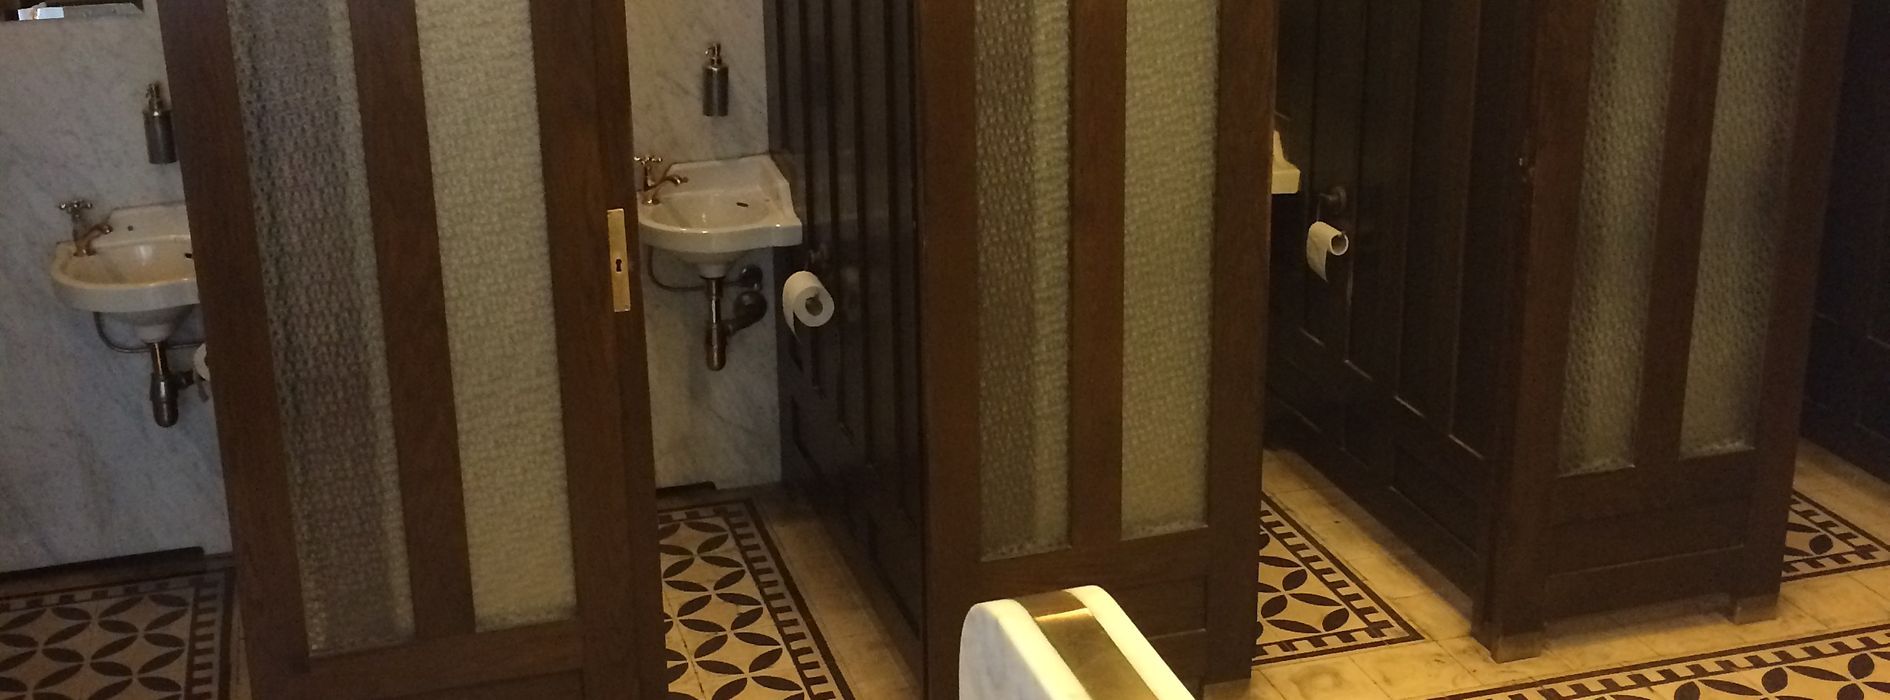 Toilette Art nouveau